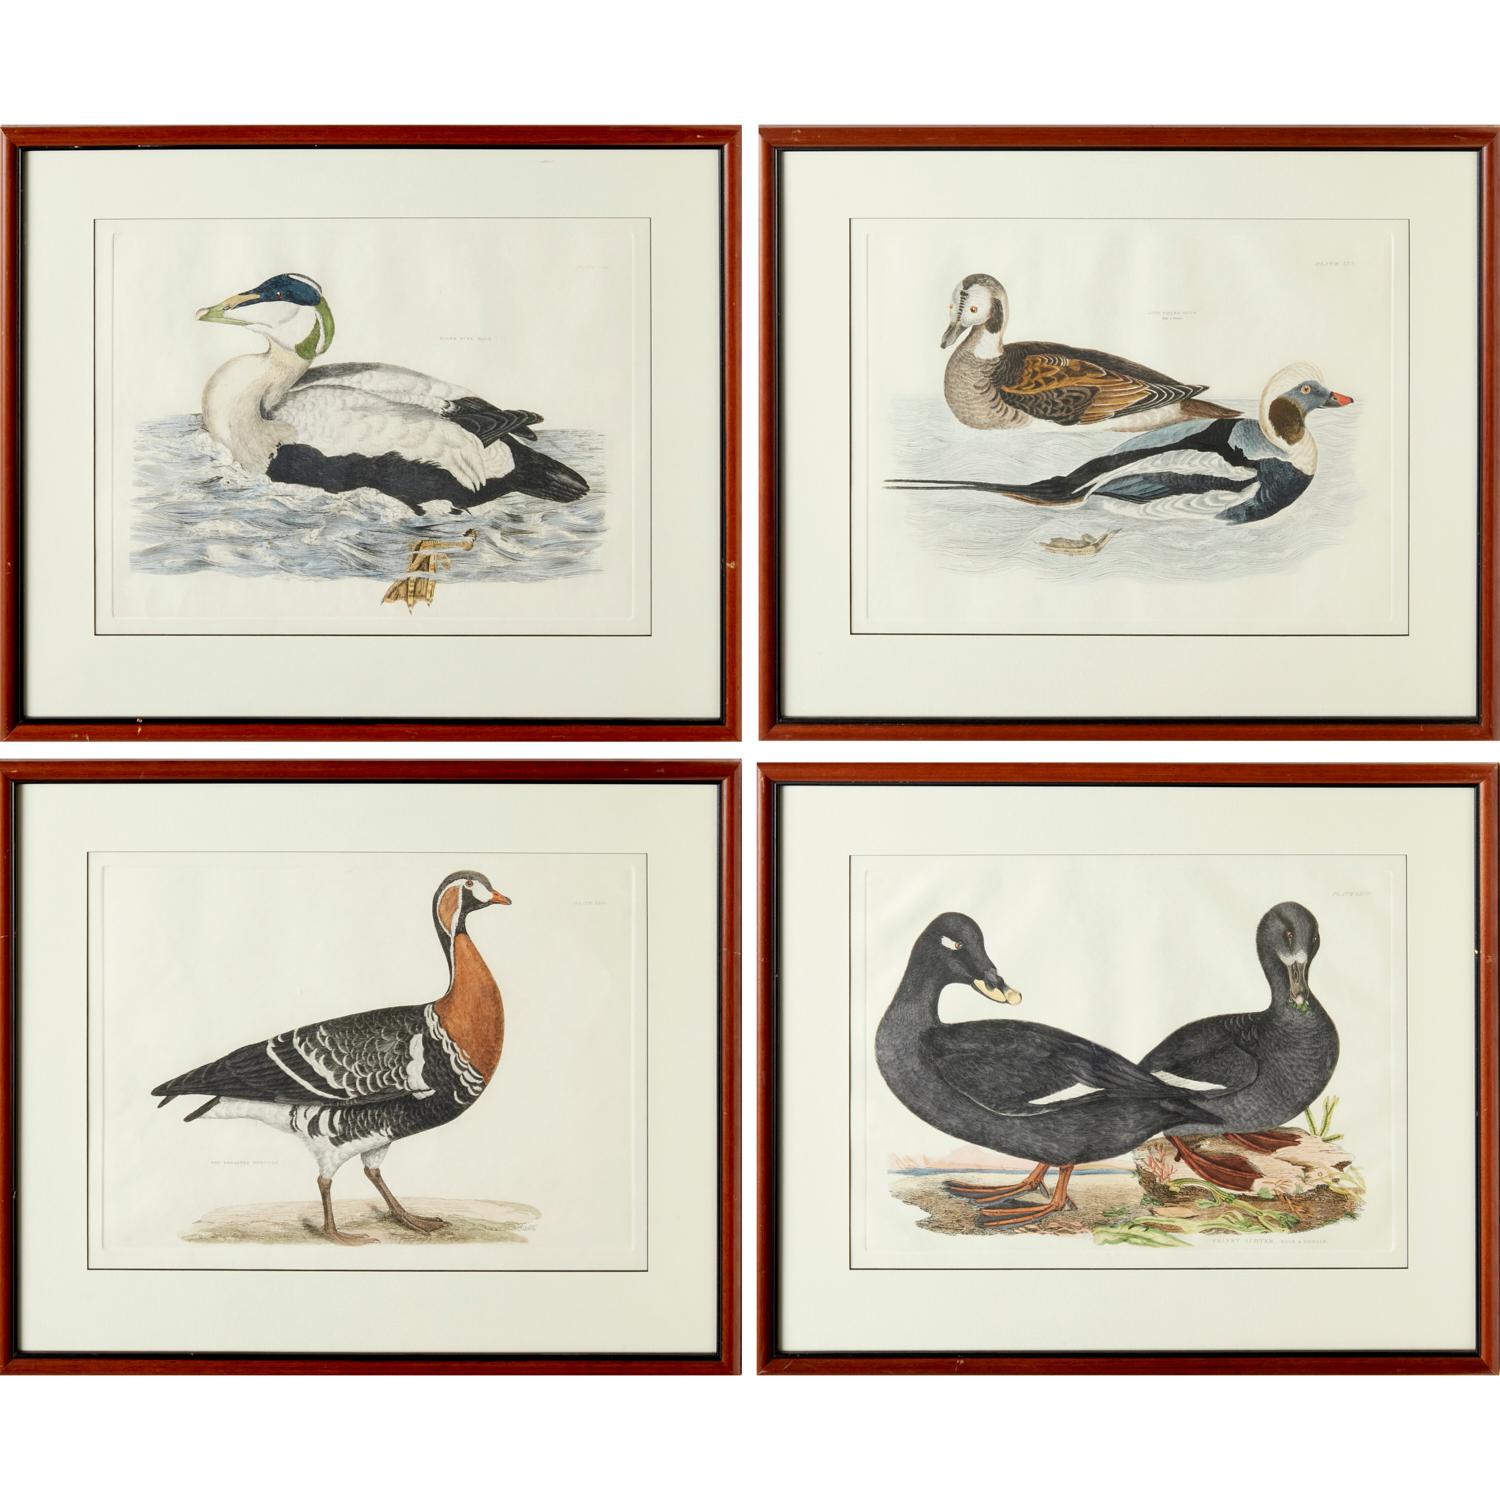 Selby's Illustrations of British Ornithology (London: 1841-1846). Wahrscheinlich ein späterer Nachdruck (20. Jh.), handkolorierte Drucke, geprägt mit Plattenmarken, darunter: 